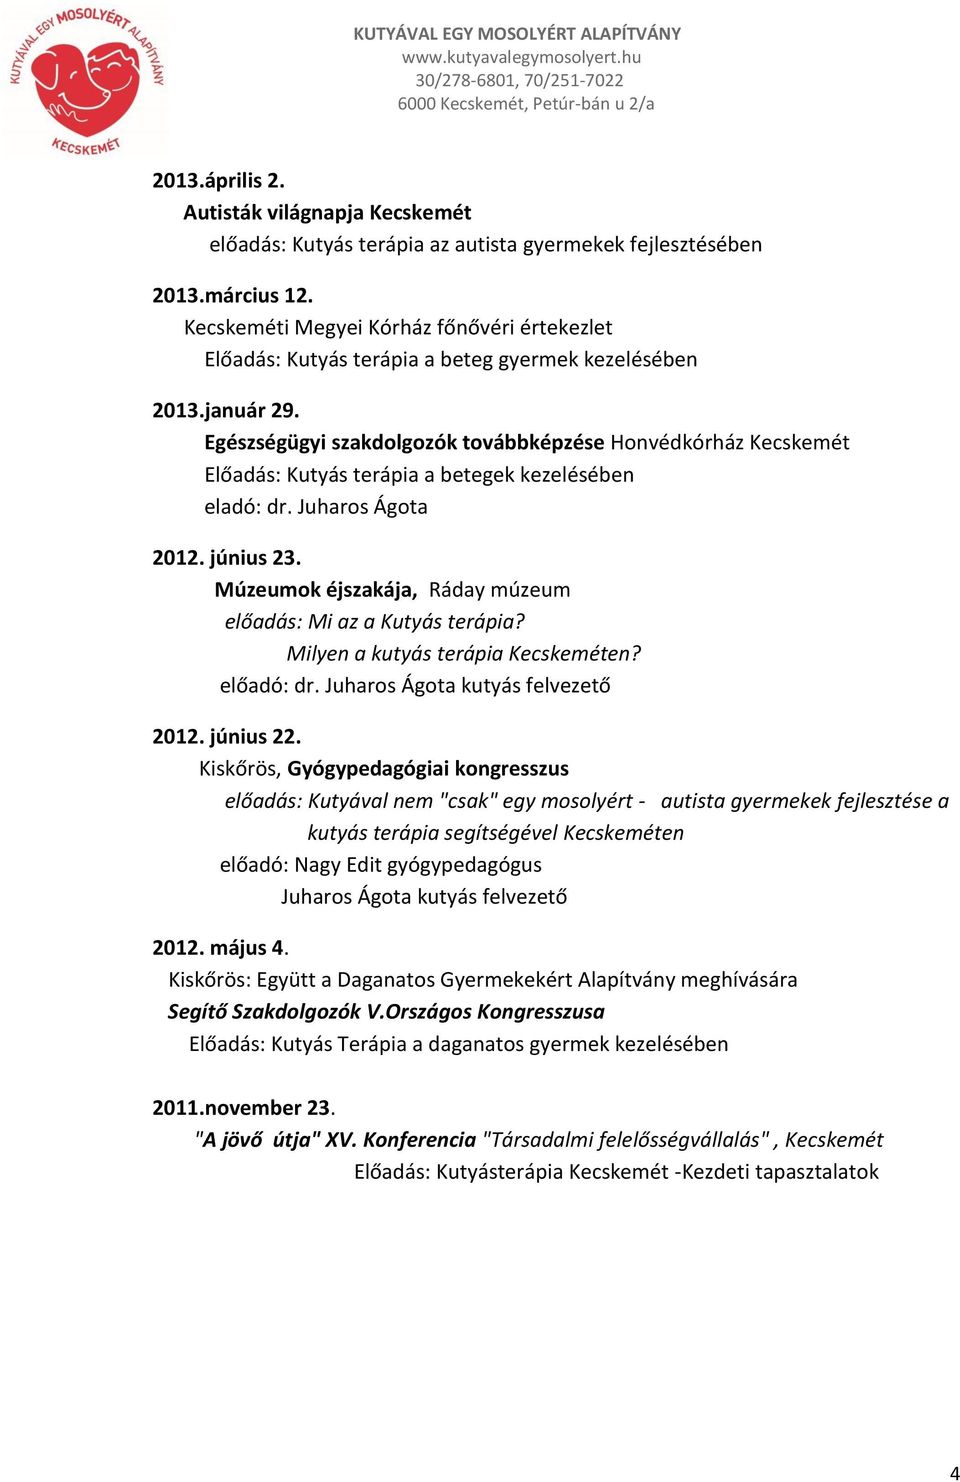 Egészségügyi szakdolgozók továbbképzése Honvédkórház Kecskemét Előadás: Kutyás terápia a betegek kezelésében eladó: dr. Juharos Ágota 2012. június 23.